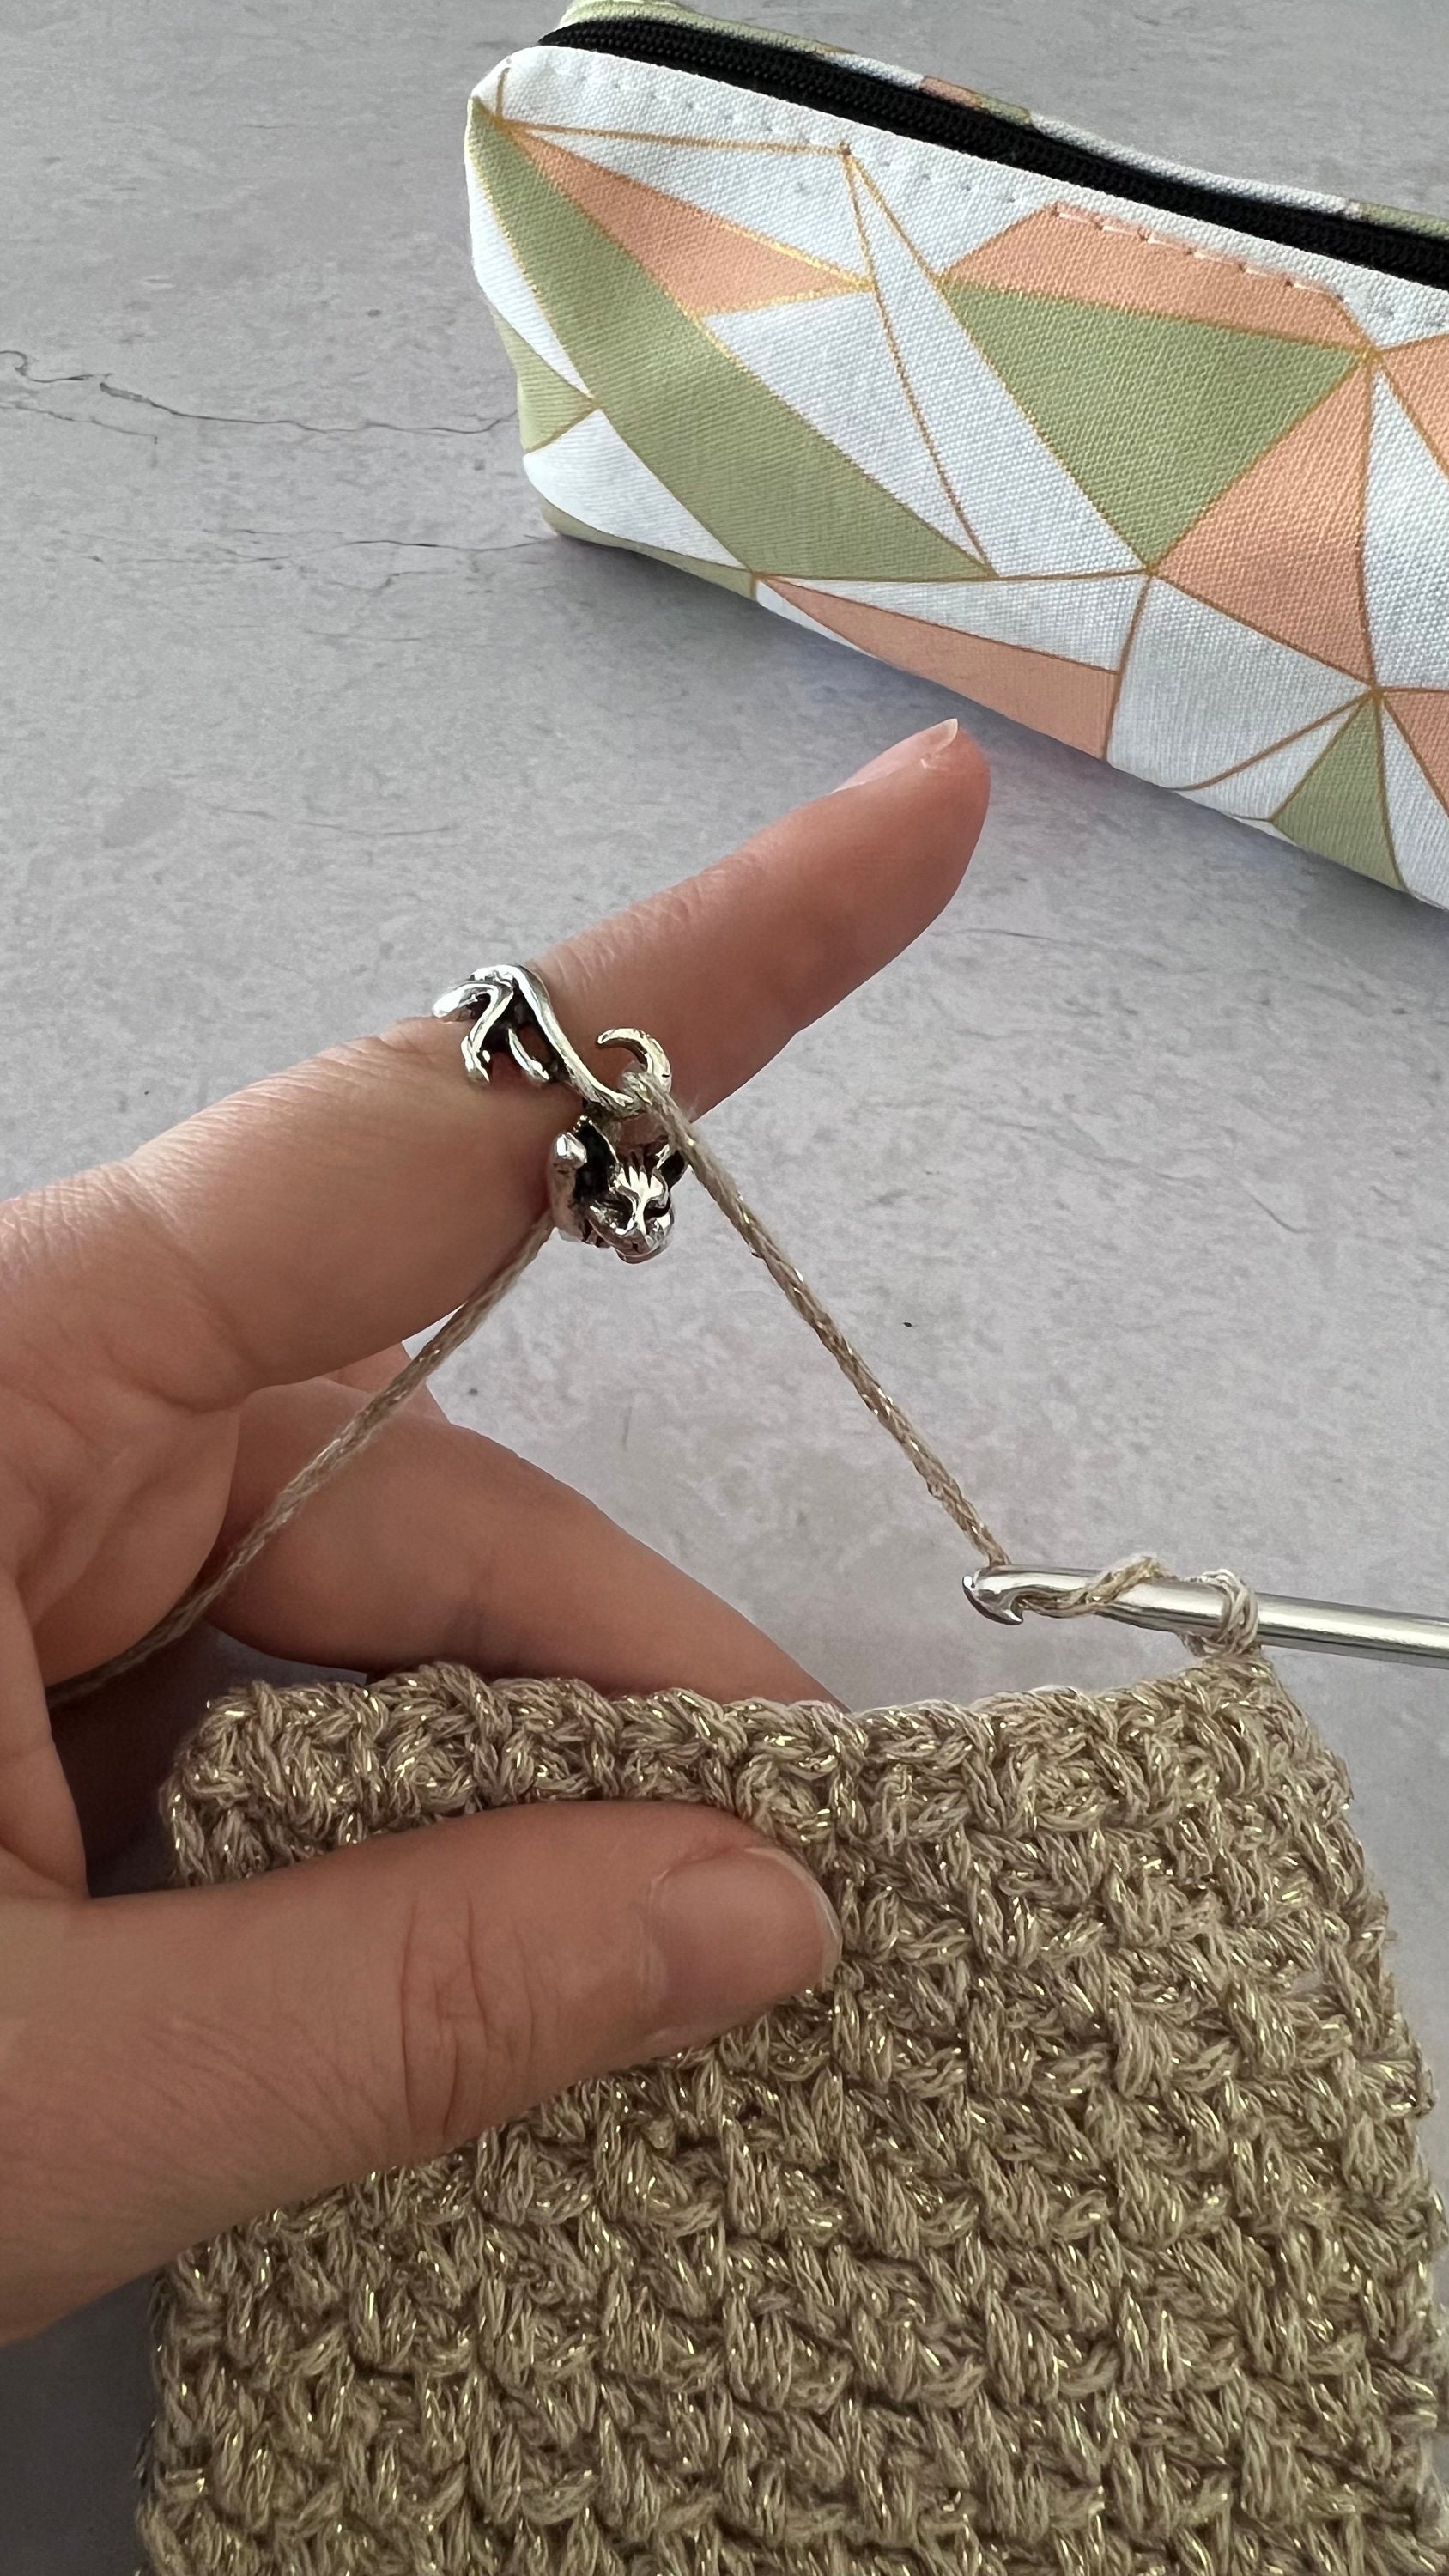 2 Pcs Adjustable Crochet Ring for Finger, Crochet Tension Ring for Braided  Knitting Ring Yarn Tension Rings for Crochet Knitting Accessories Gift for